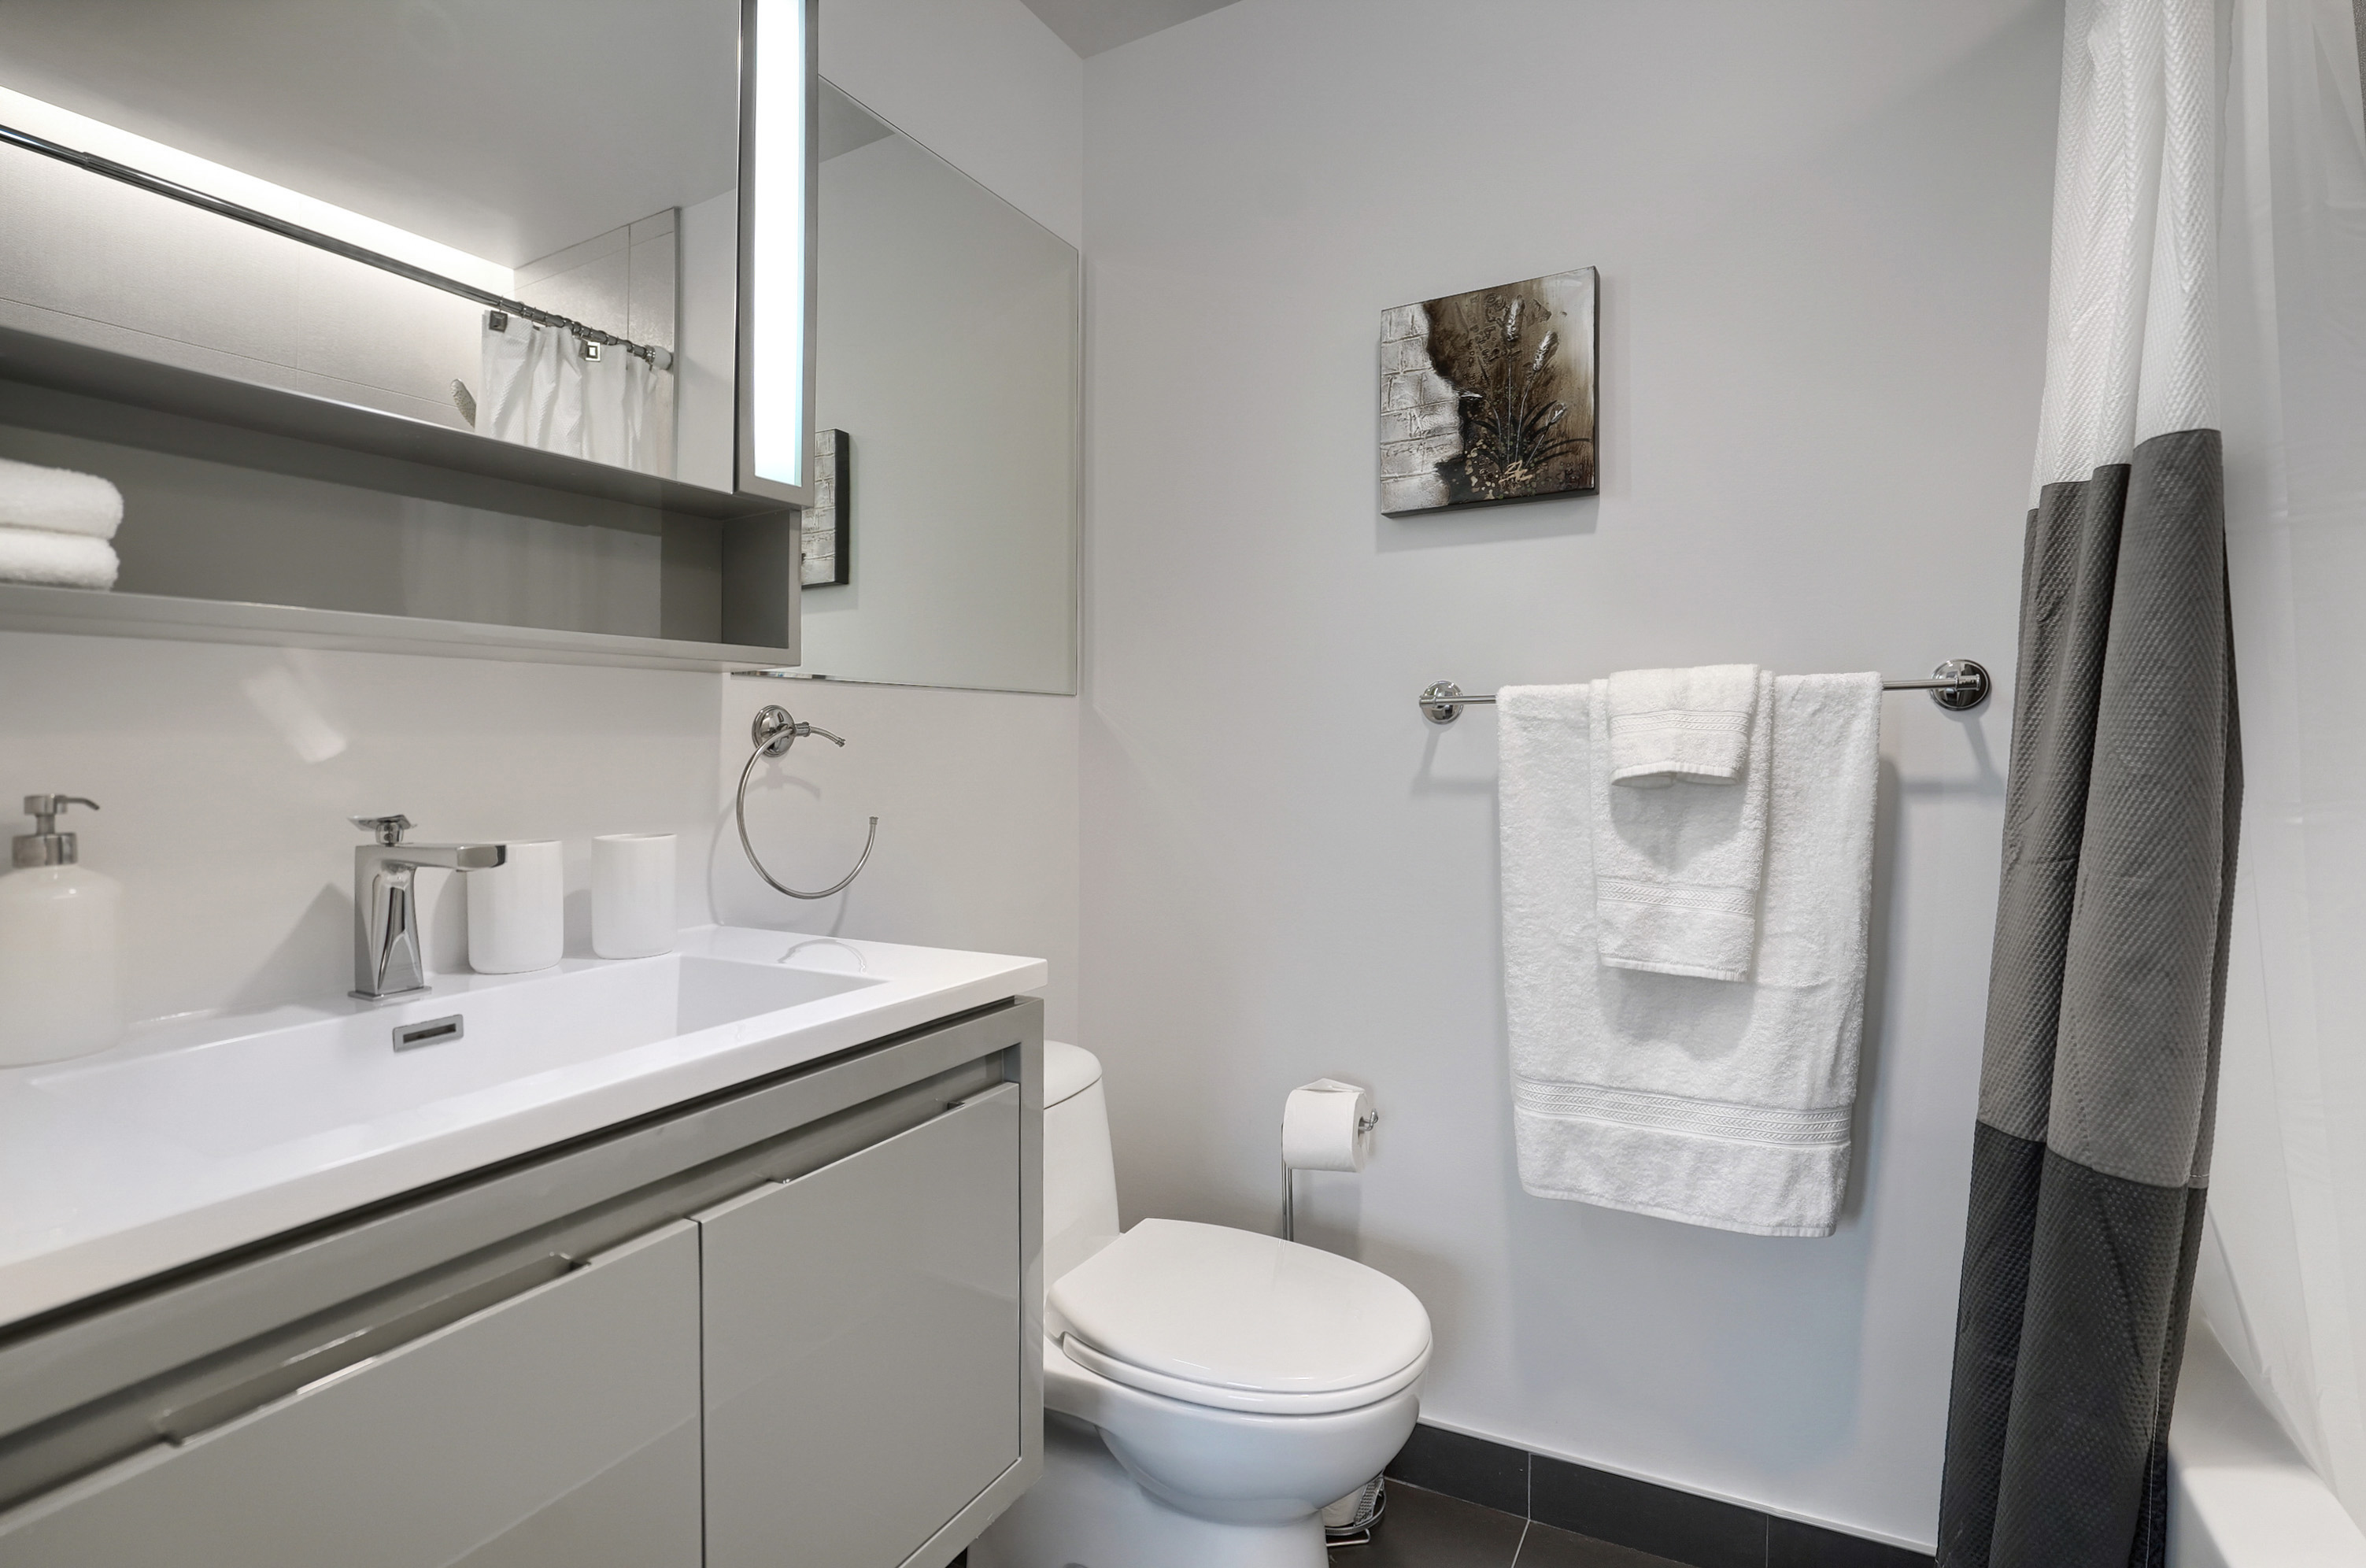 Vue de la salle de bain - claire et lumineuse. Murs clairs, évier surdimensionné blanc avec robinet en acier inoxydable design, armoires décoratives plus sombres, baignoire blanche avec douche. Salle de bain spacieuse dans ce loft meublé centre-ville de Montréal 